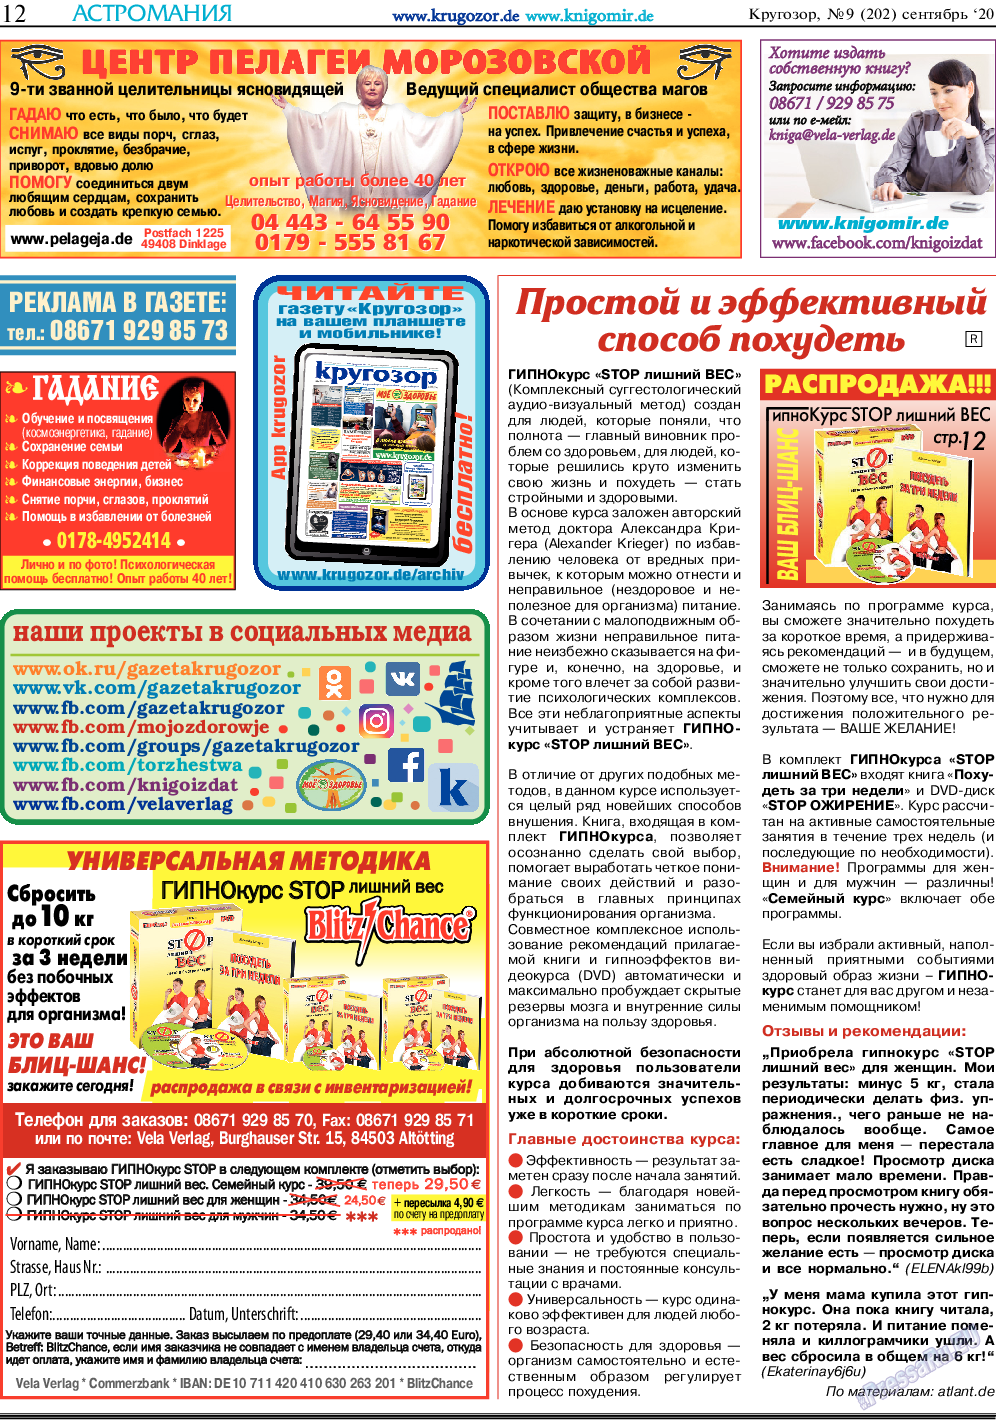 Кругозор, газета. 2020 №9 стр.12